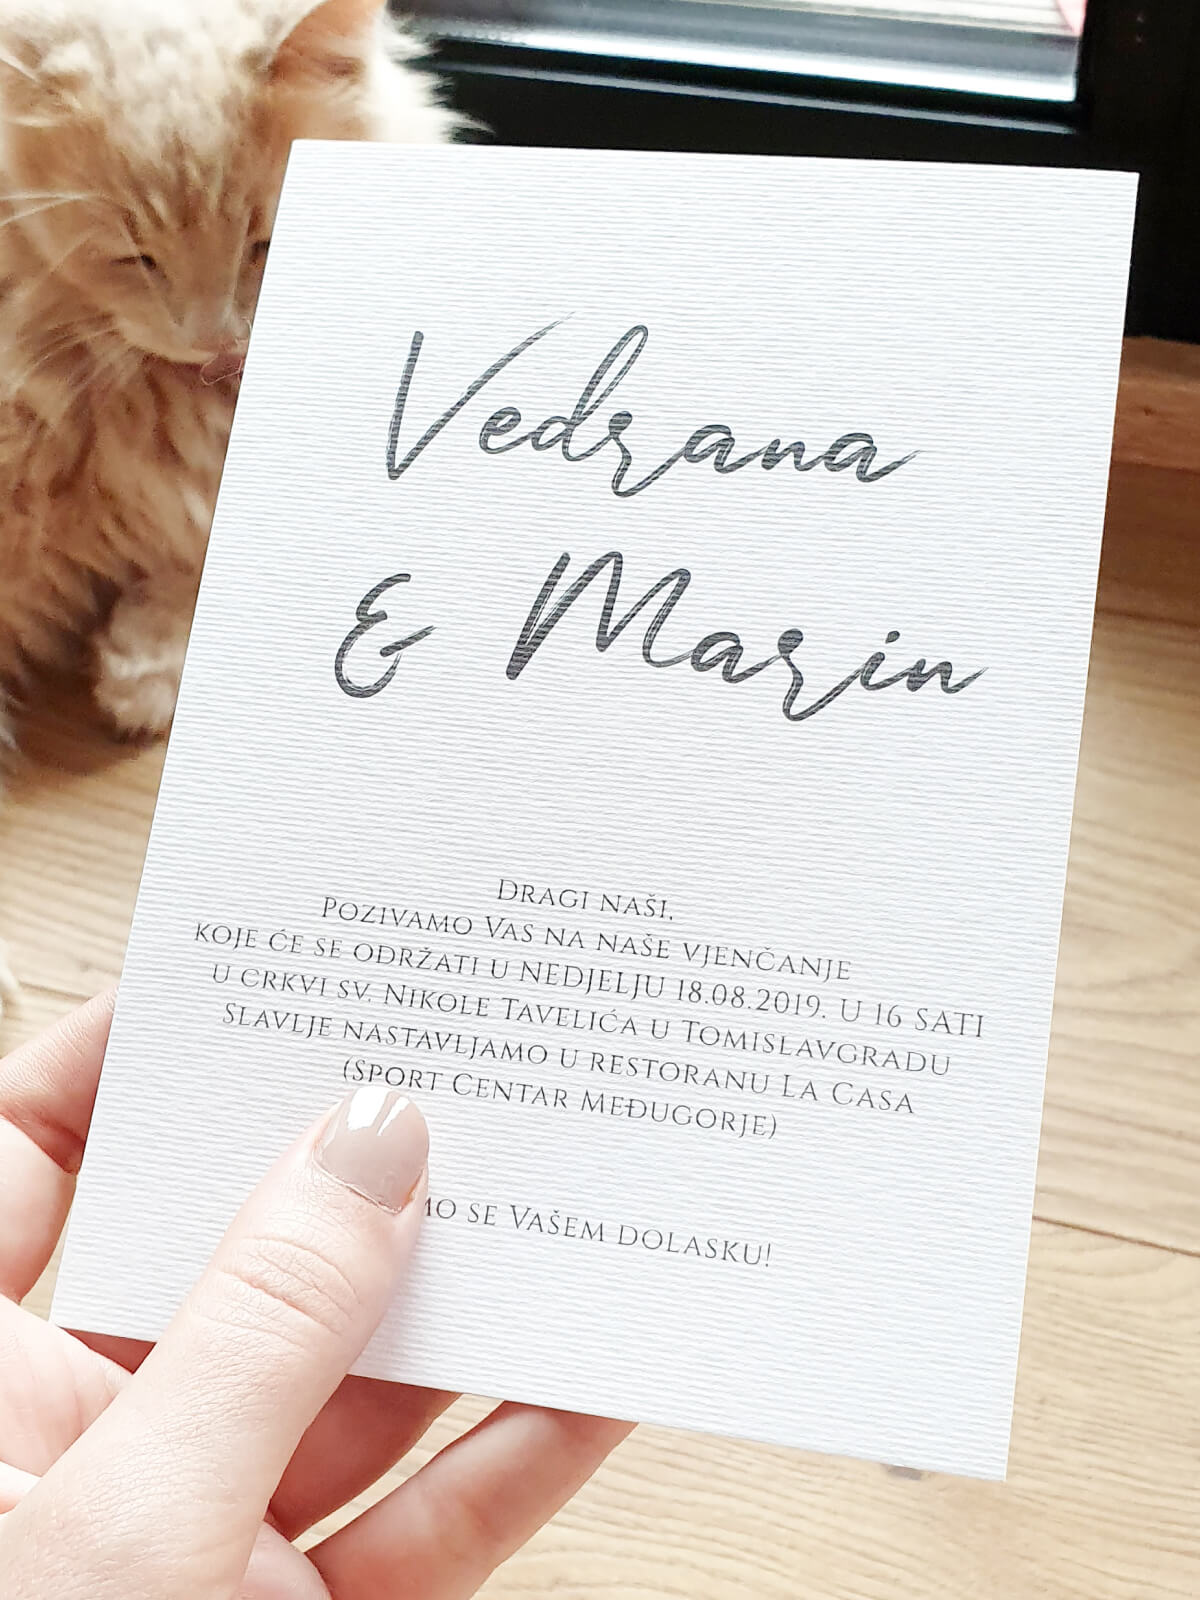 Moderni dizajn pozivnice za vjenčanje s imenima mladenaca u središtu i minimalističkim detaljima